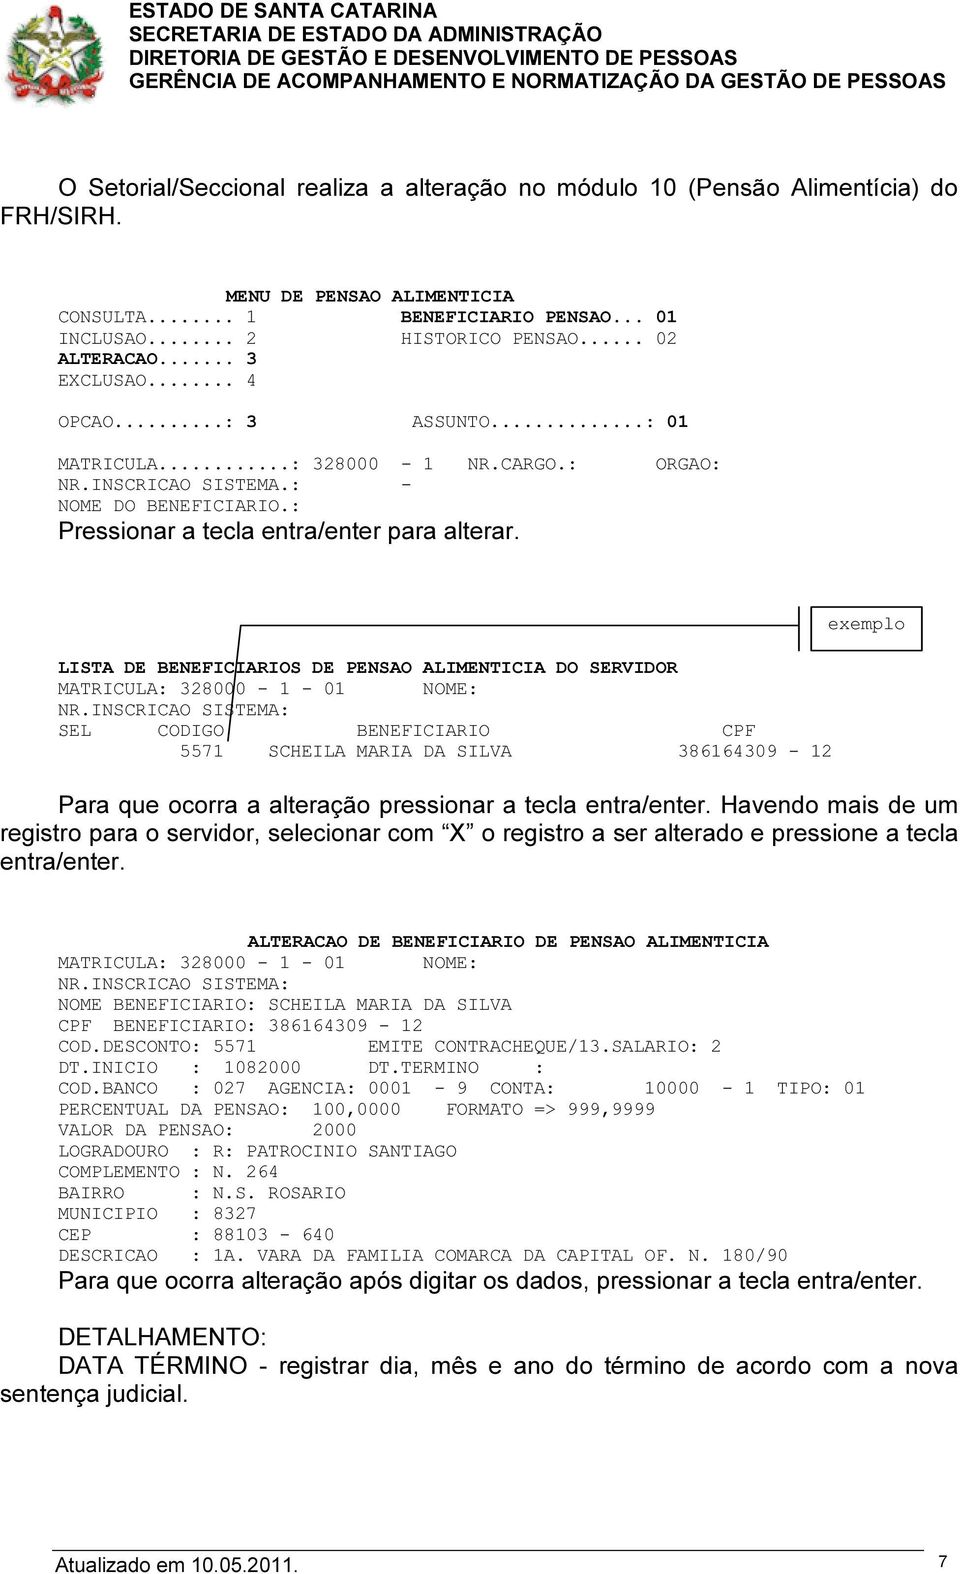 LISTA DE BENEFICIARIOS DE PENSAO ALIMENTICIA DO SERVIDOR MATRICULA: 328000-1 - 01 NOME: NR.